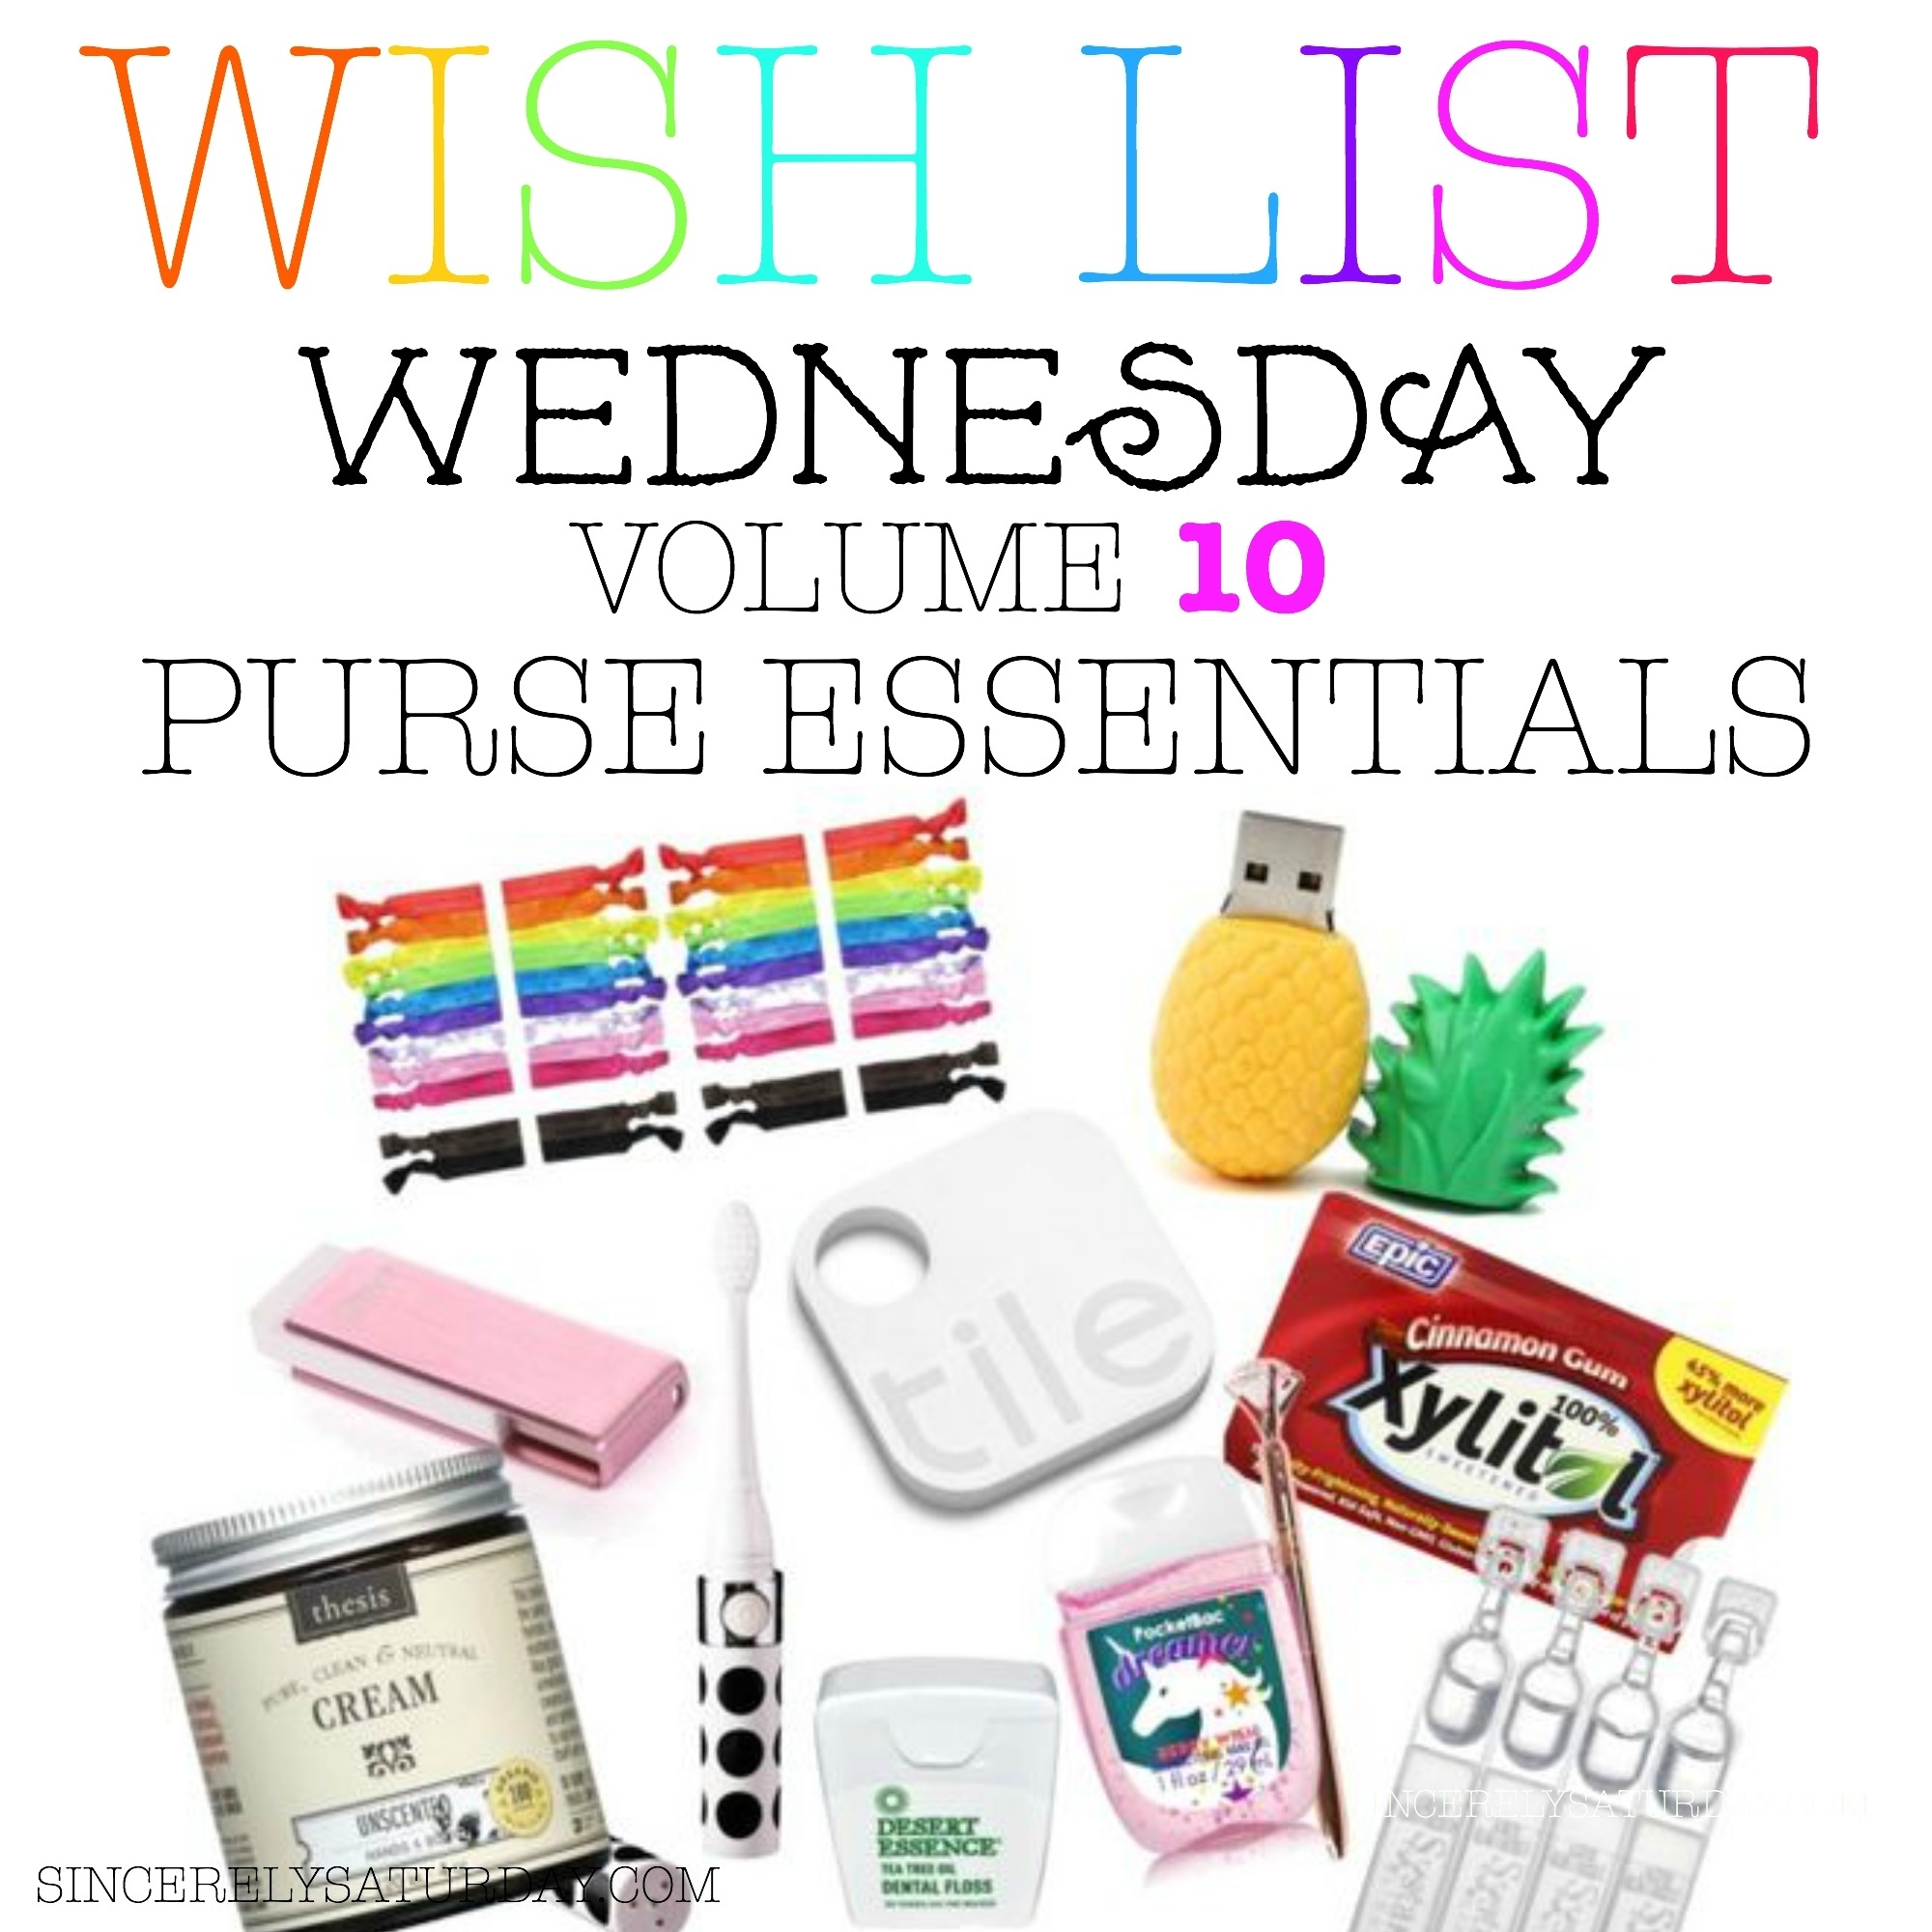 Top 10 purse essentials - Wish list Wednesday